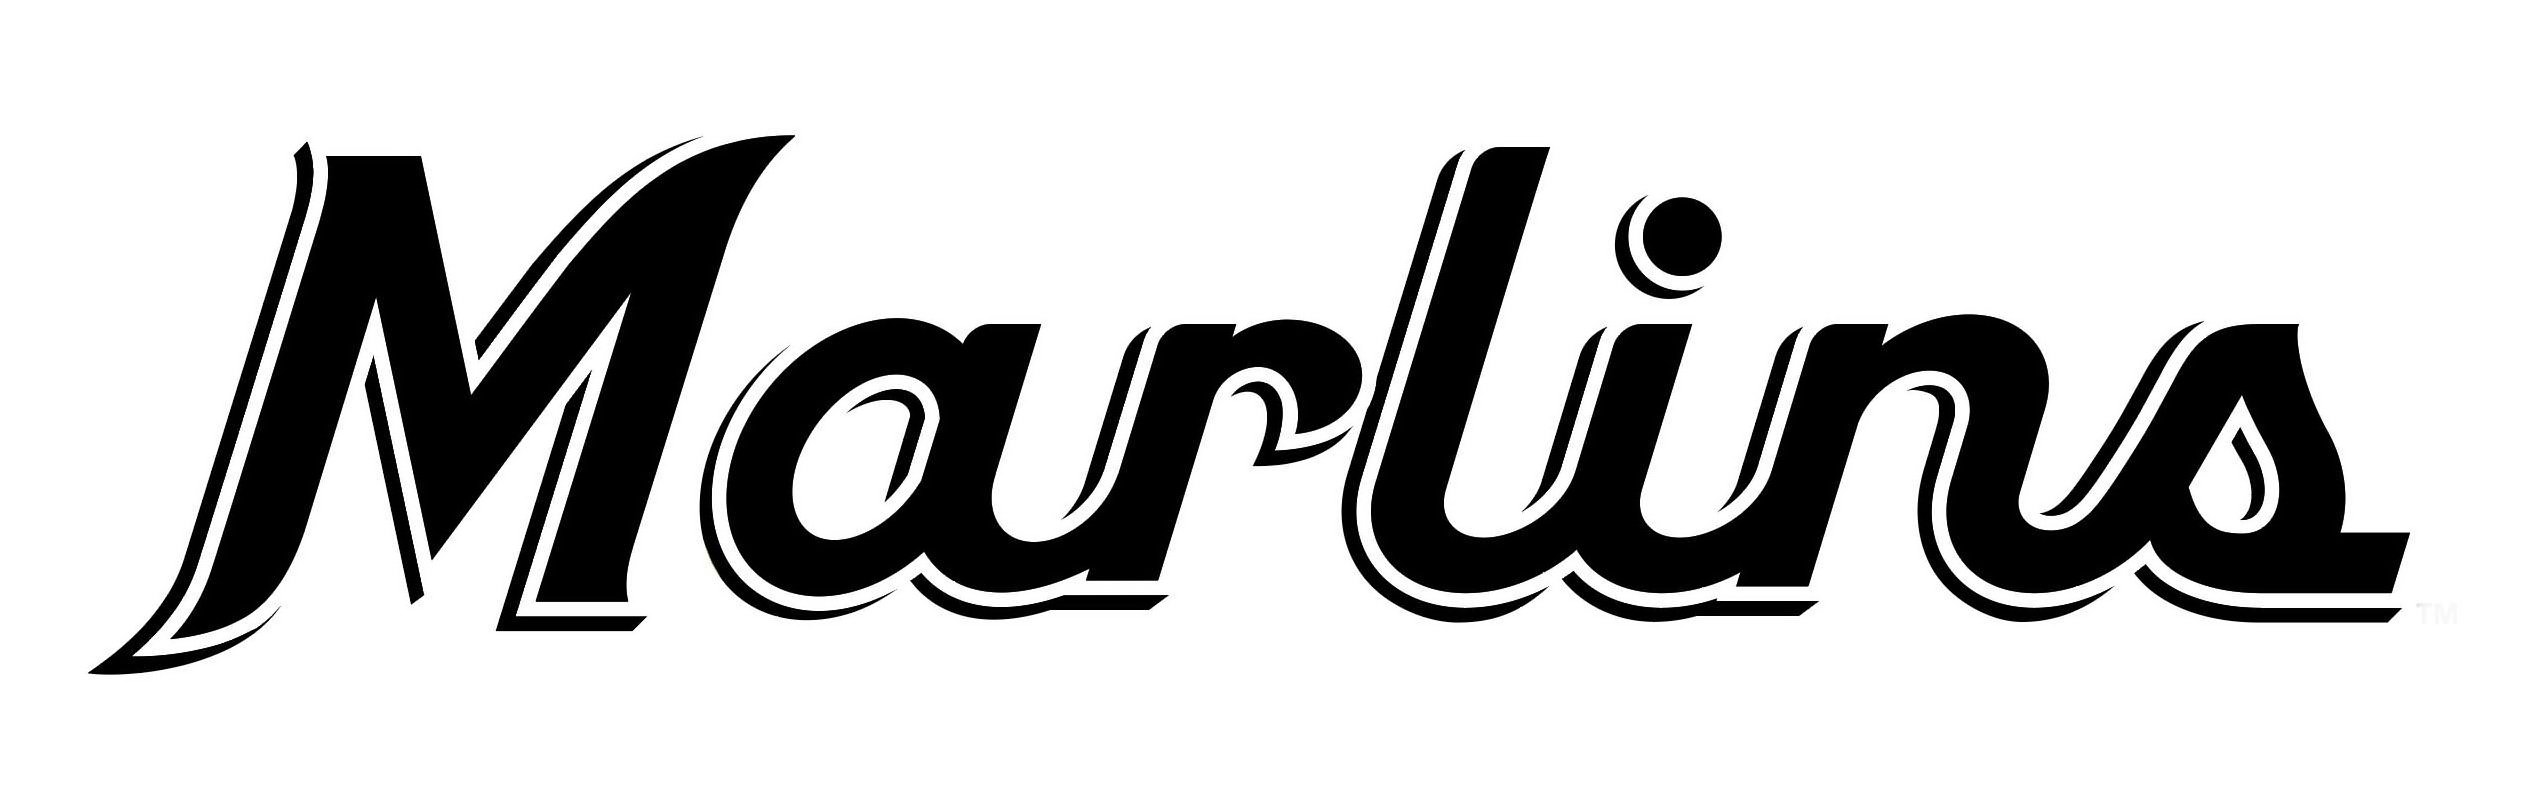 Trademark Logo MARLINS